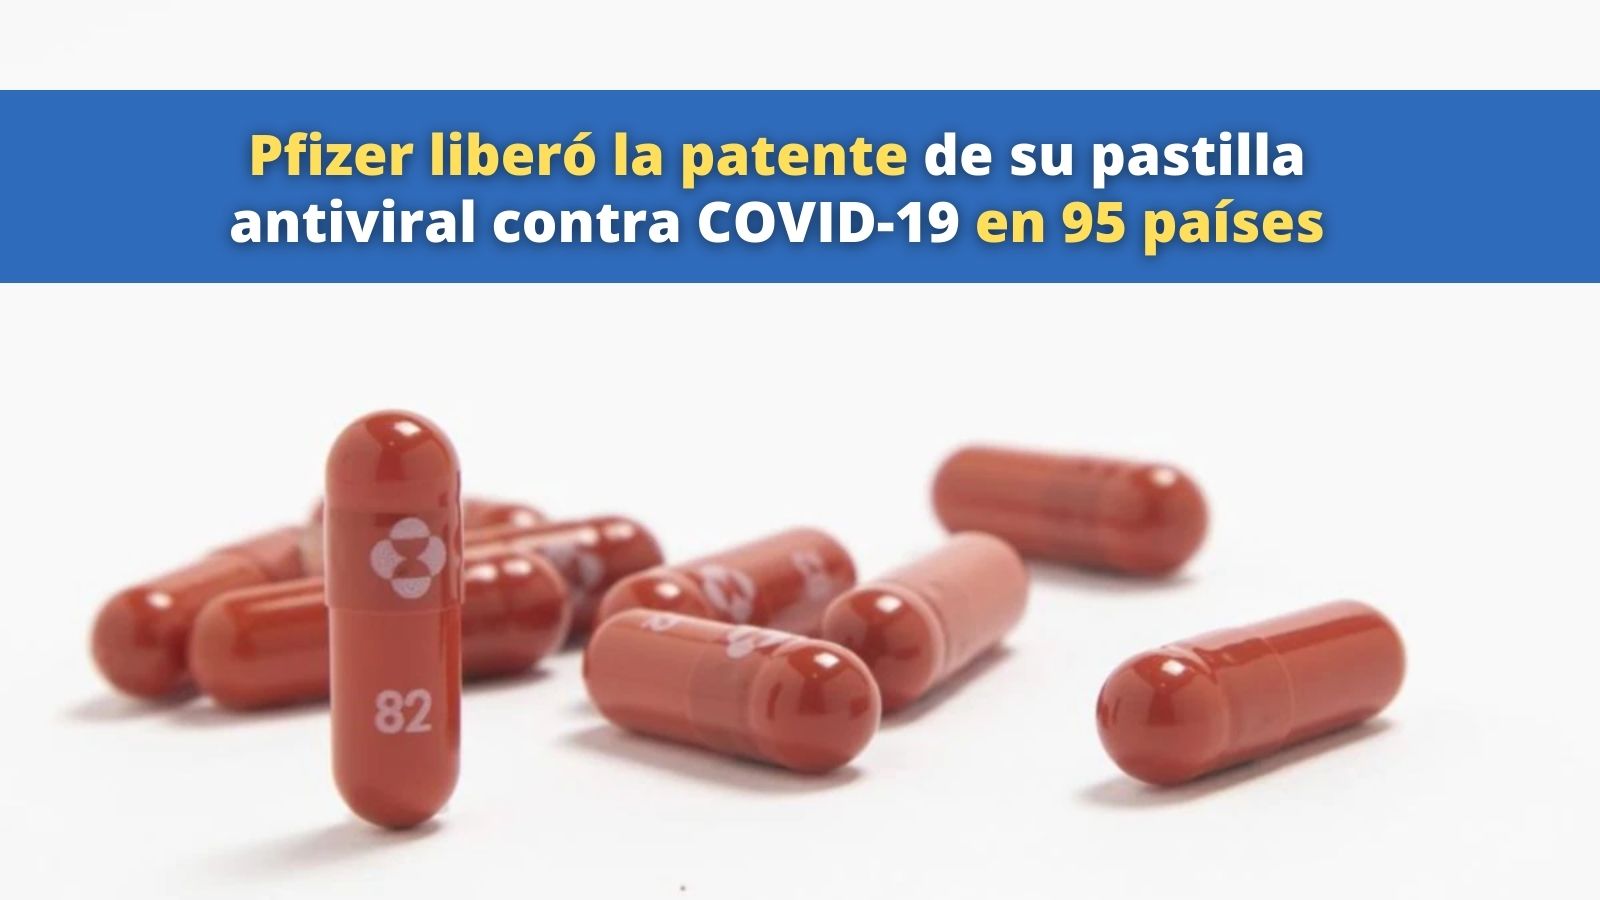 Pfizer firma acuerdo de patente pastilla anti COVID-19